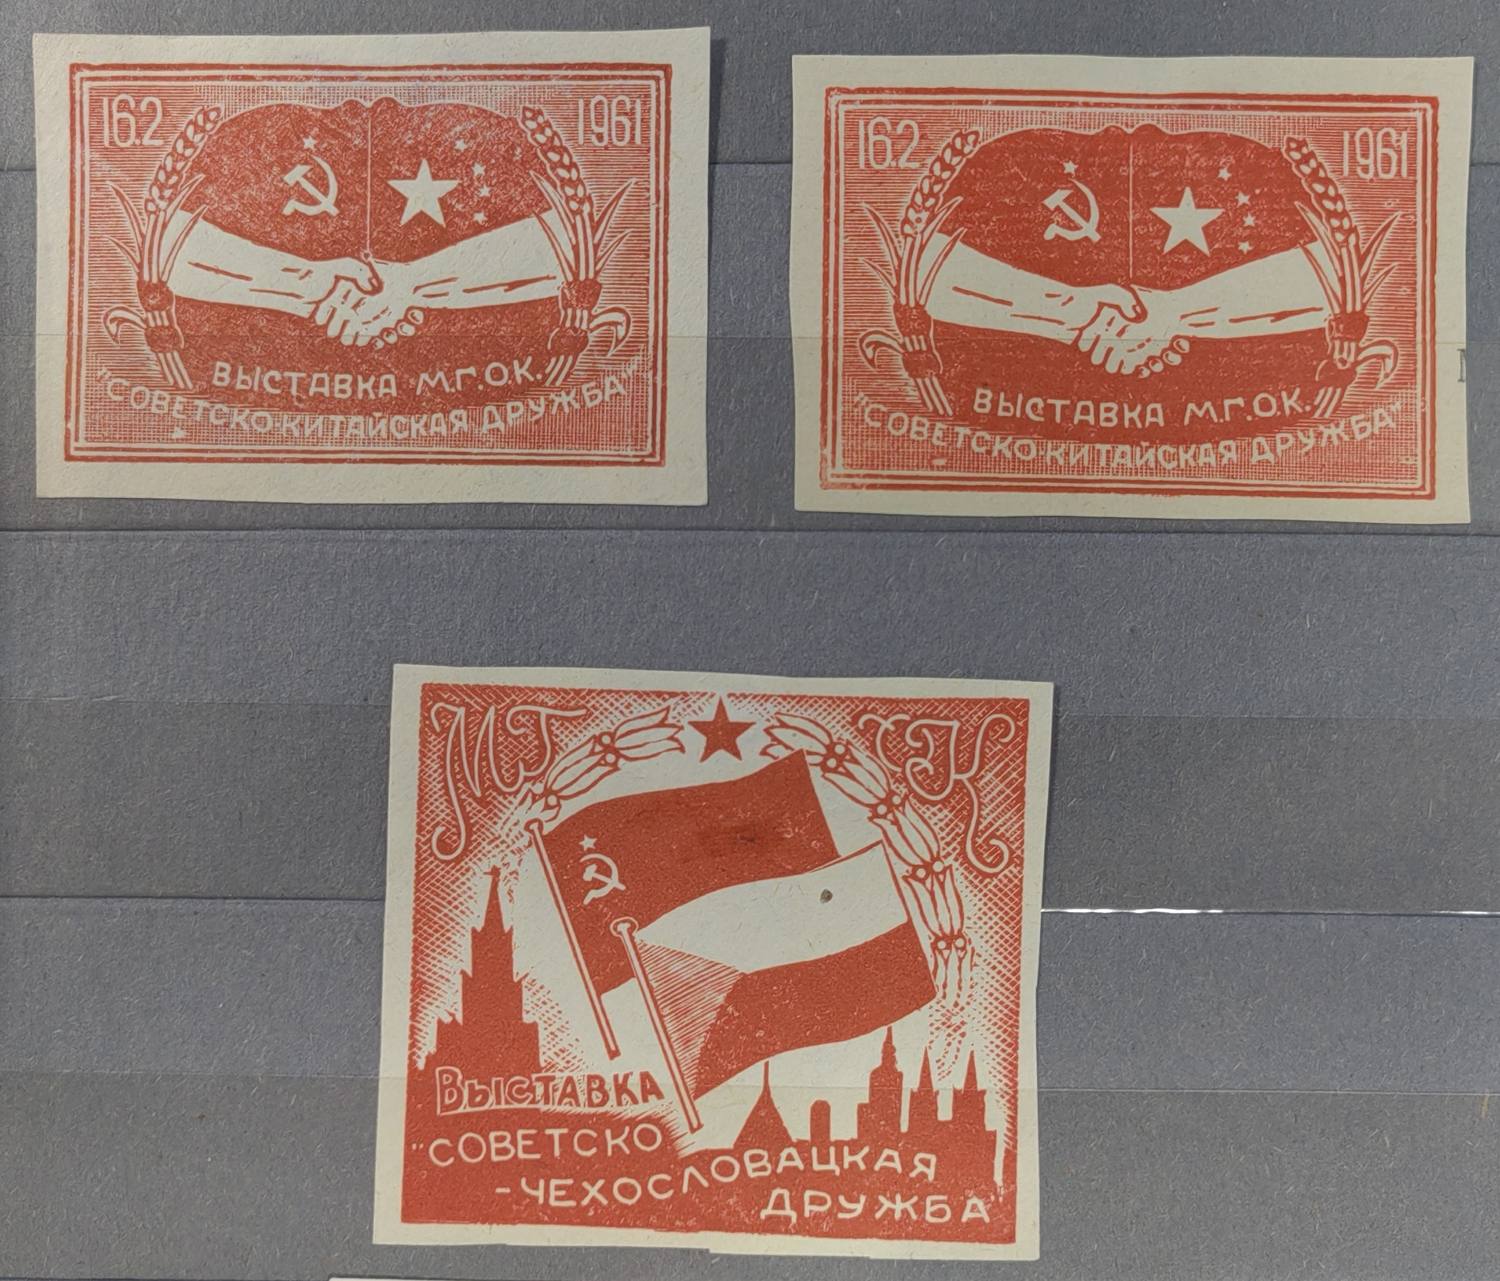 3 виньетки оргкомитетов выставок «Советско-чехословацкая дружба» и «Советско-китайская дружба». 1961.